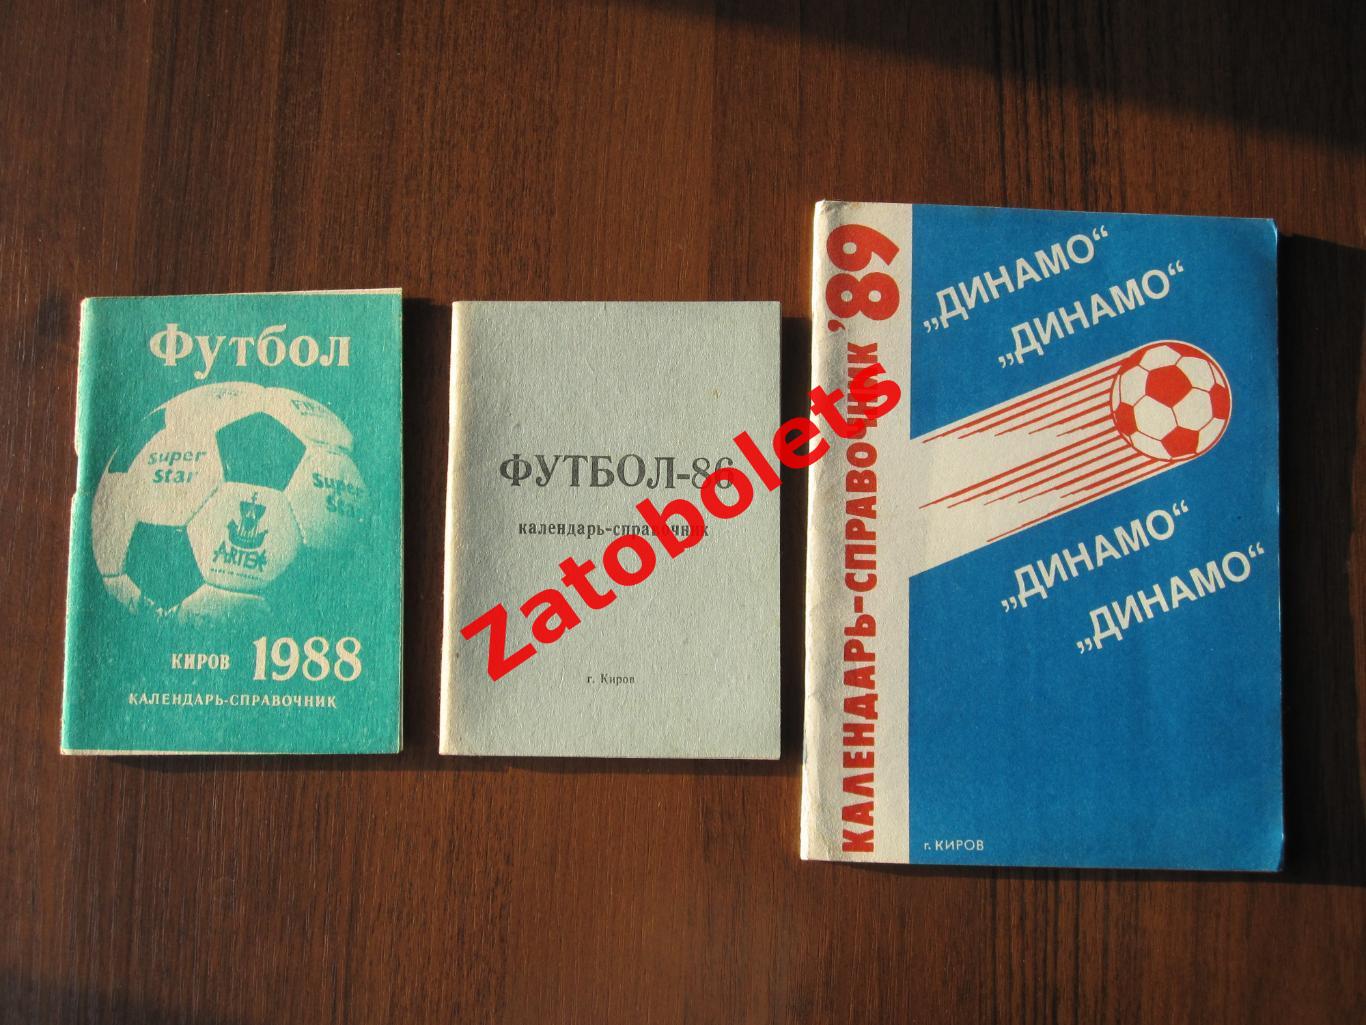 Футбол Календарь-справочник Киров 1986